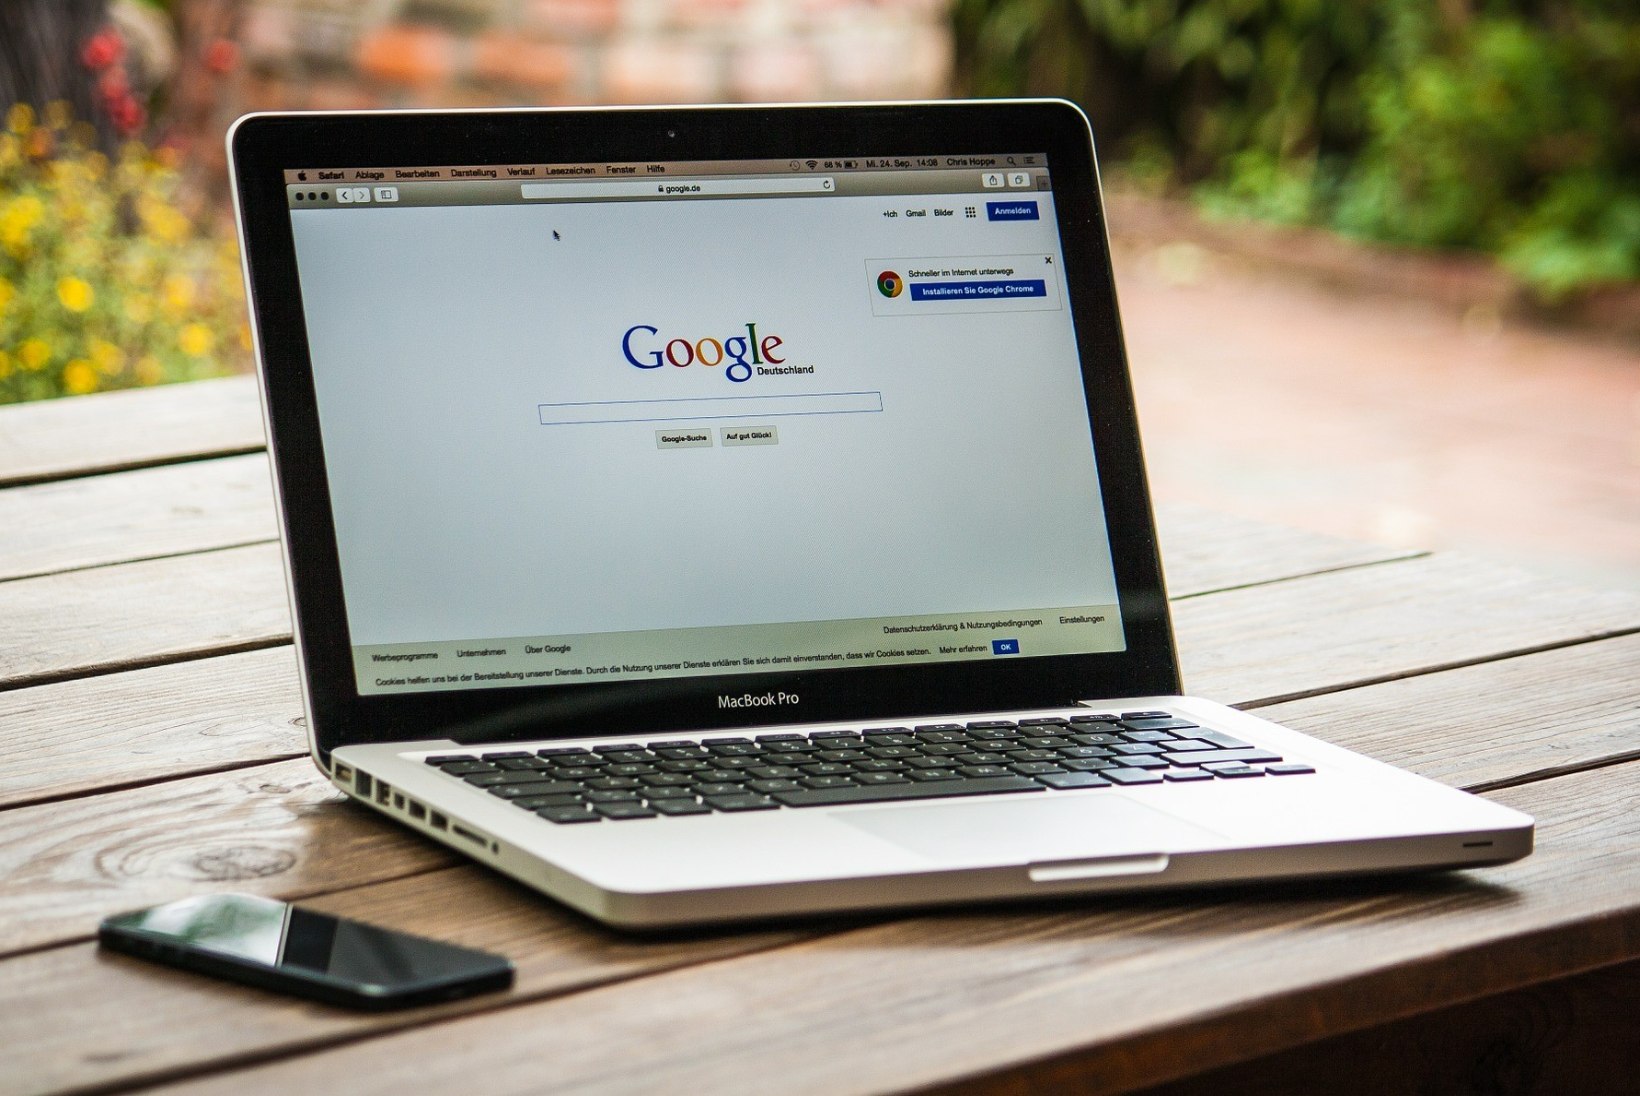 ÕIGUS OLLA UNUSTATUD: kui palju nõutakse Google’ilt enda otsingumootorist kustutamist?